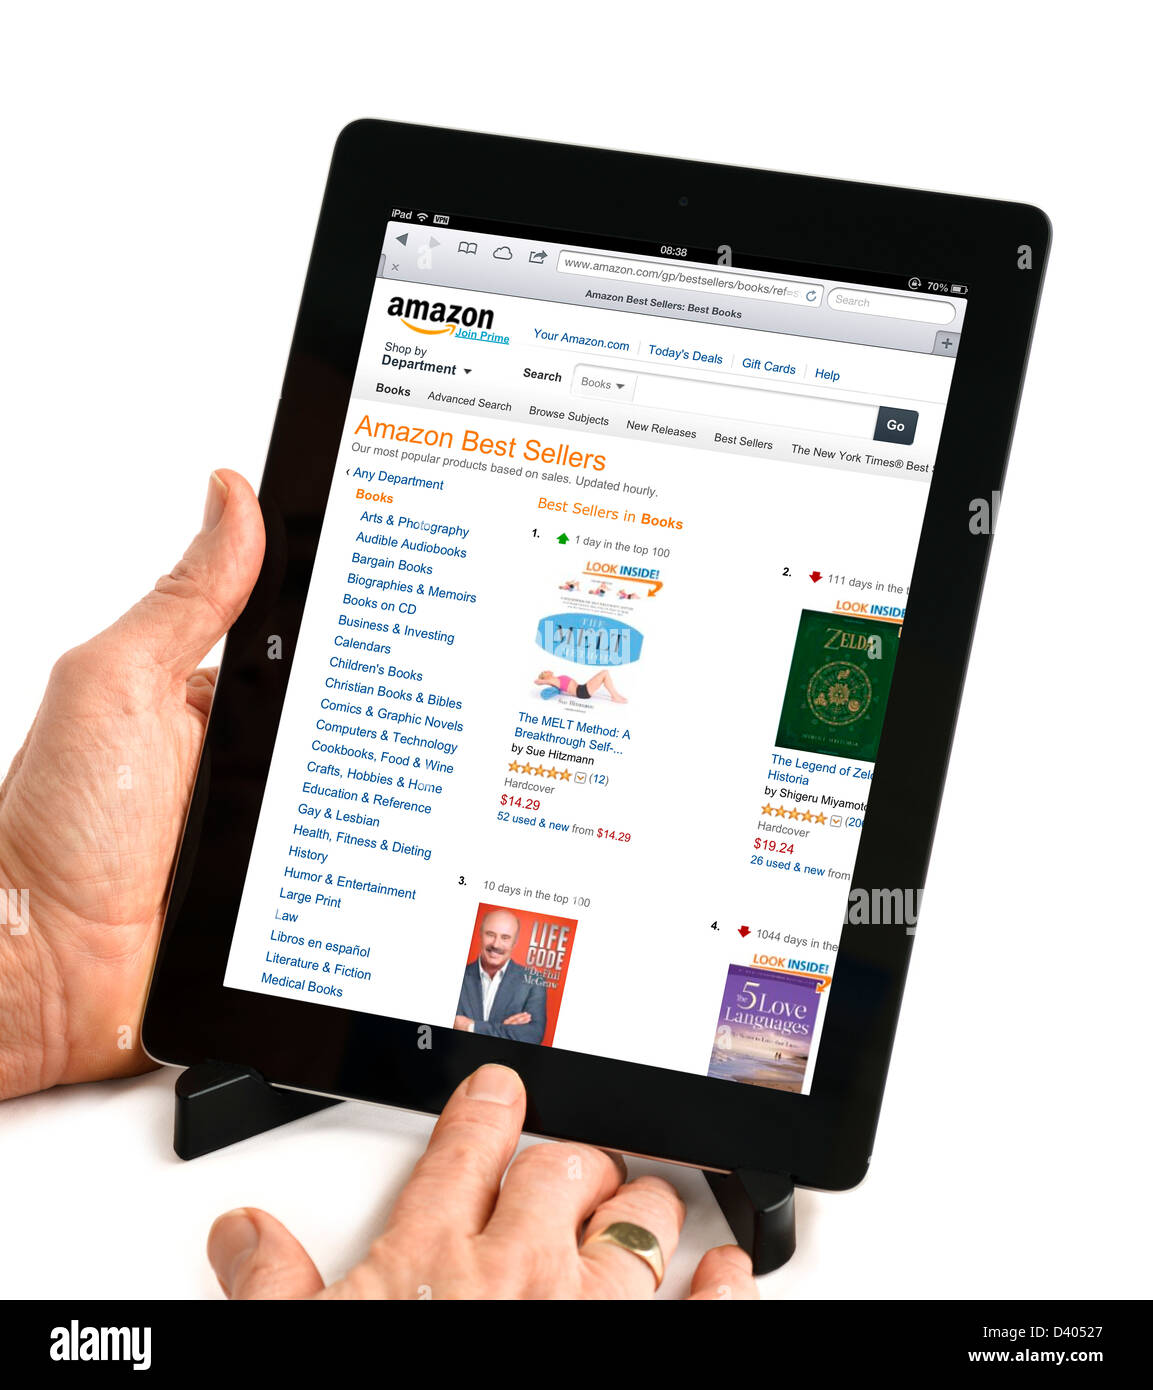 Shopping pour les livres sur l'amazon.com USA Site web sur une 4ème  génération d'Apple iPad tablet computer Photo Stock - Alamy